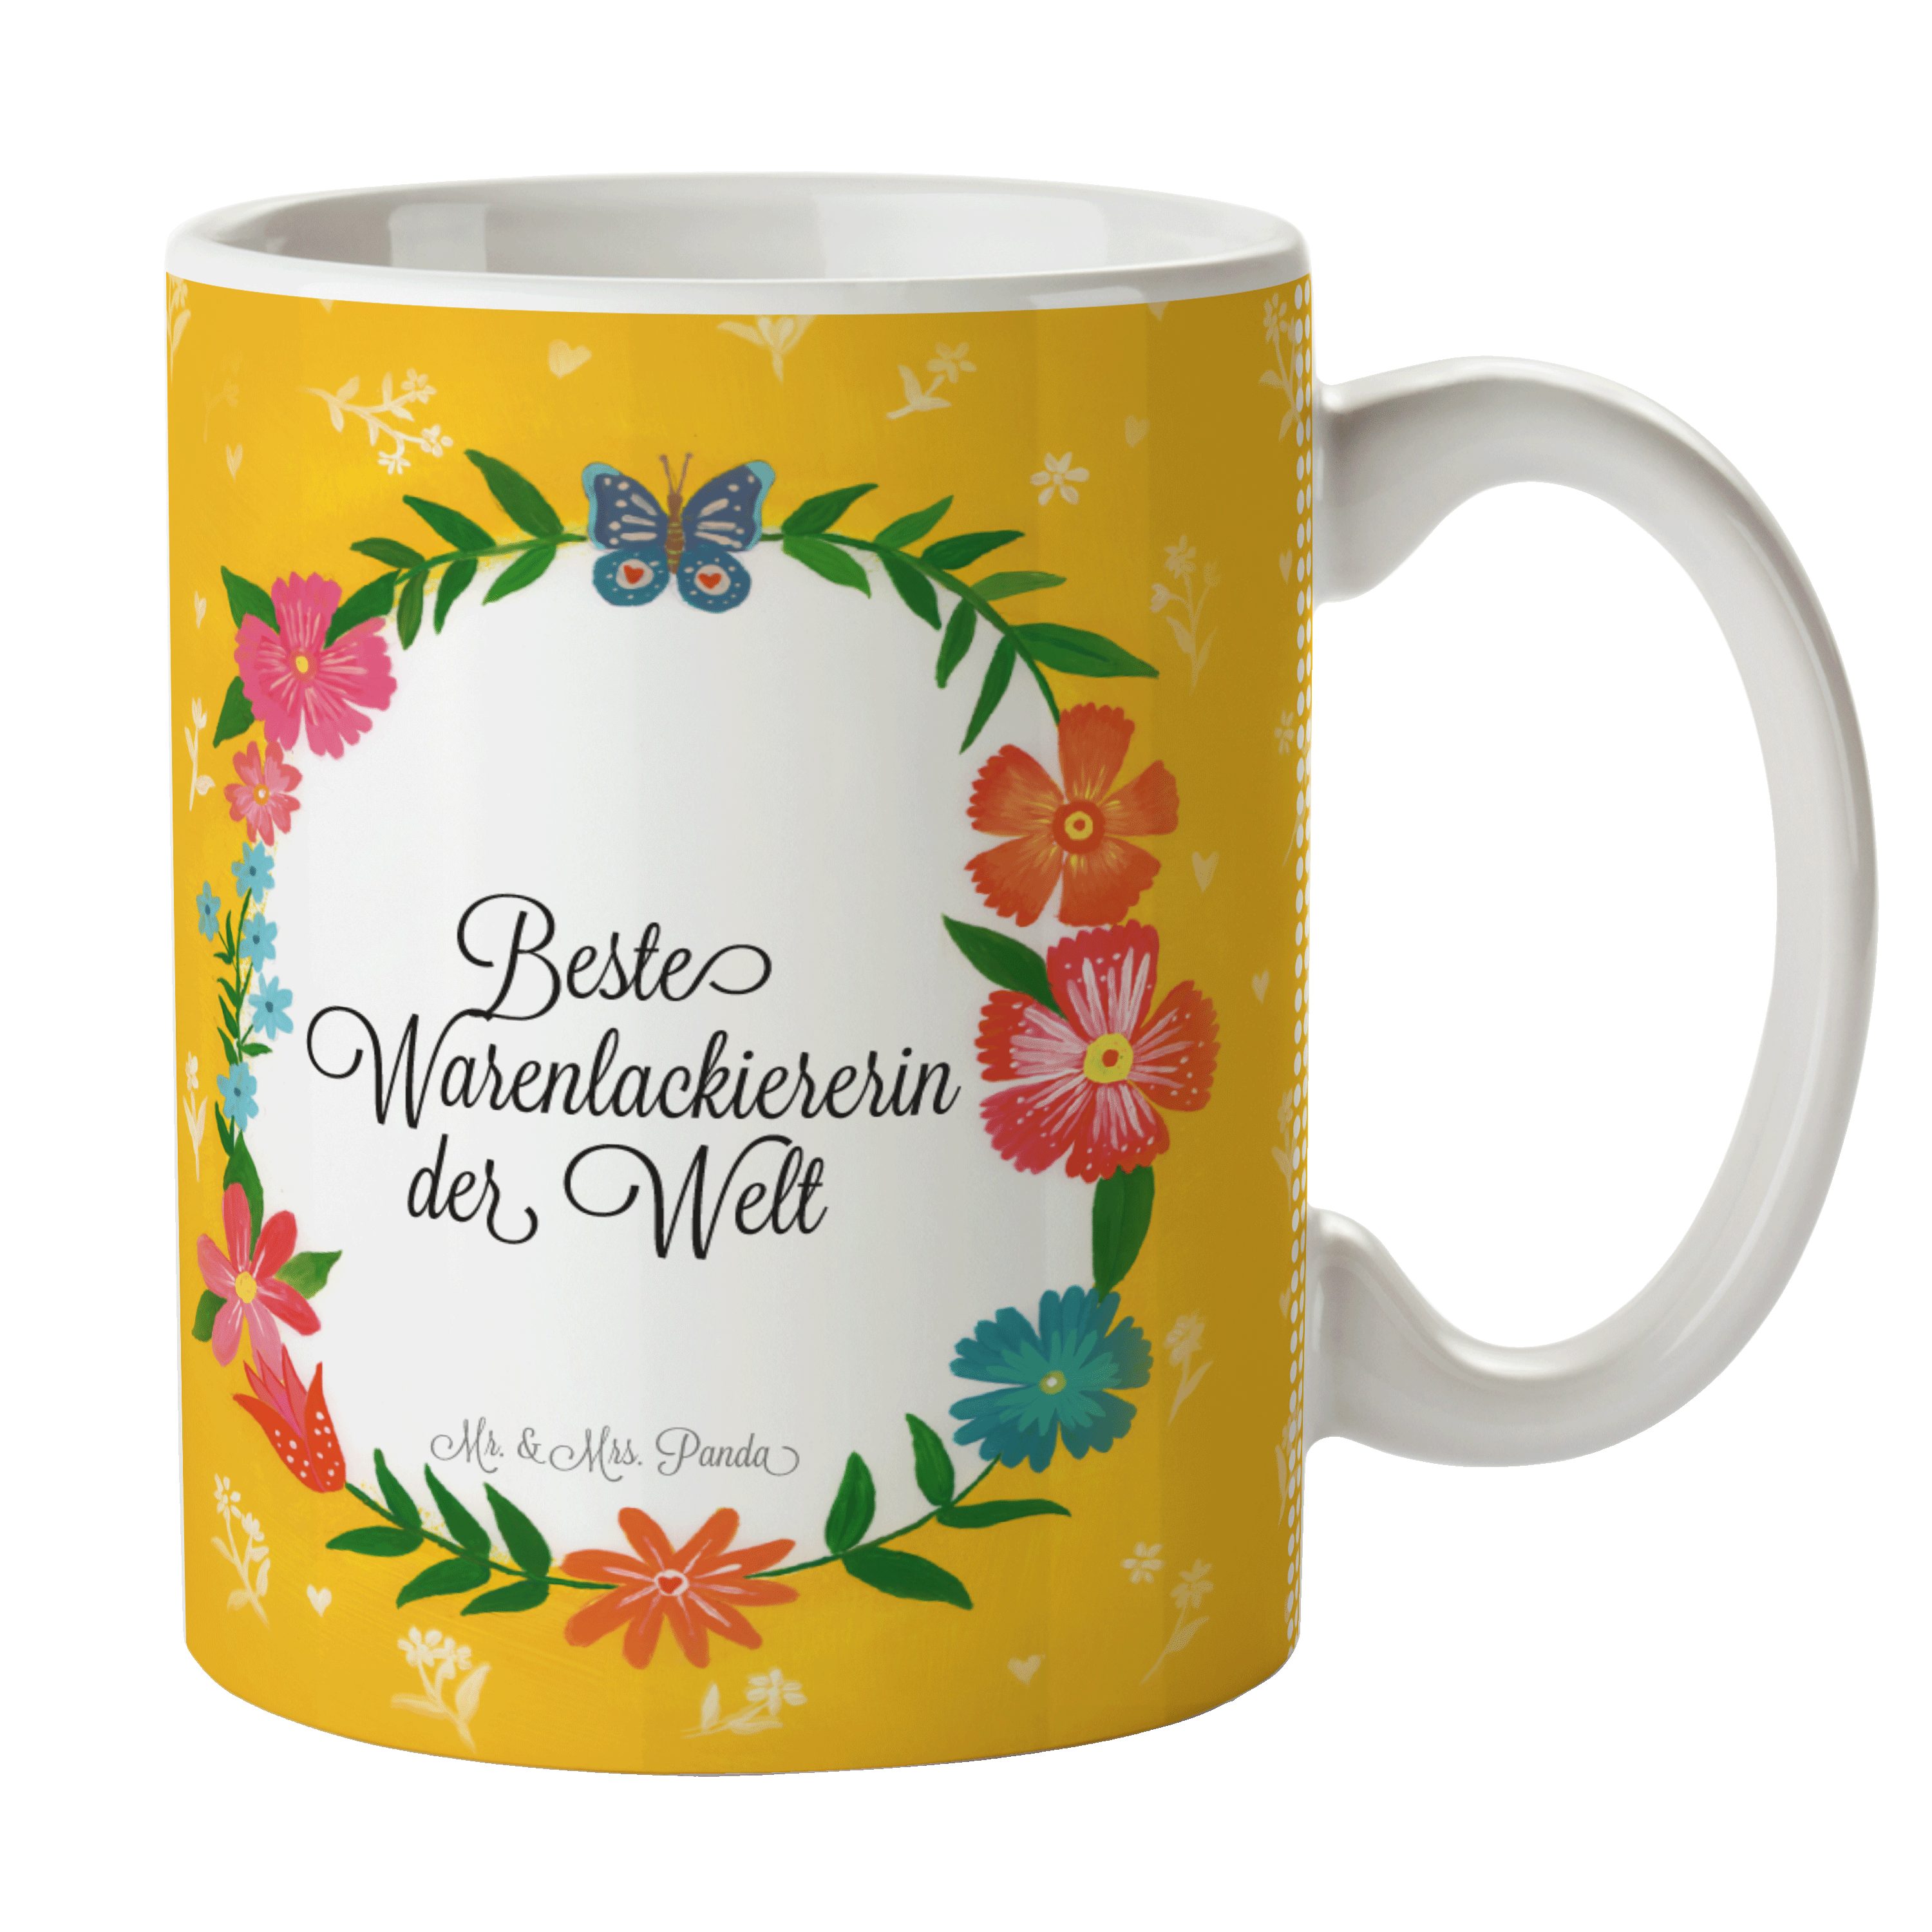 Keramik Mrs. Abschied, - Teetasse, Geschenk, Tasse Sprüche, Warenlackiererin Mr. Panda & Gesch, Tasse